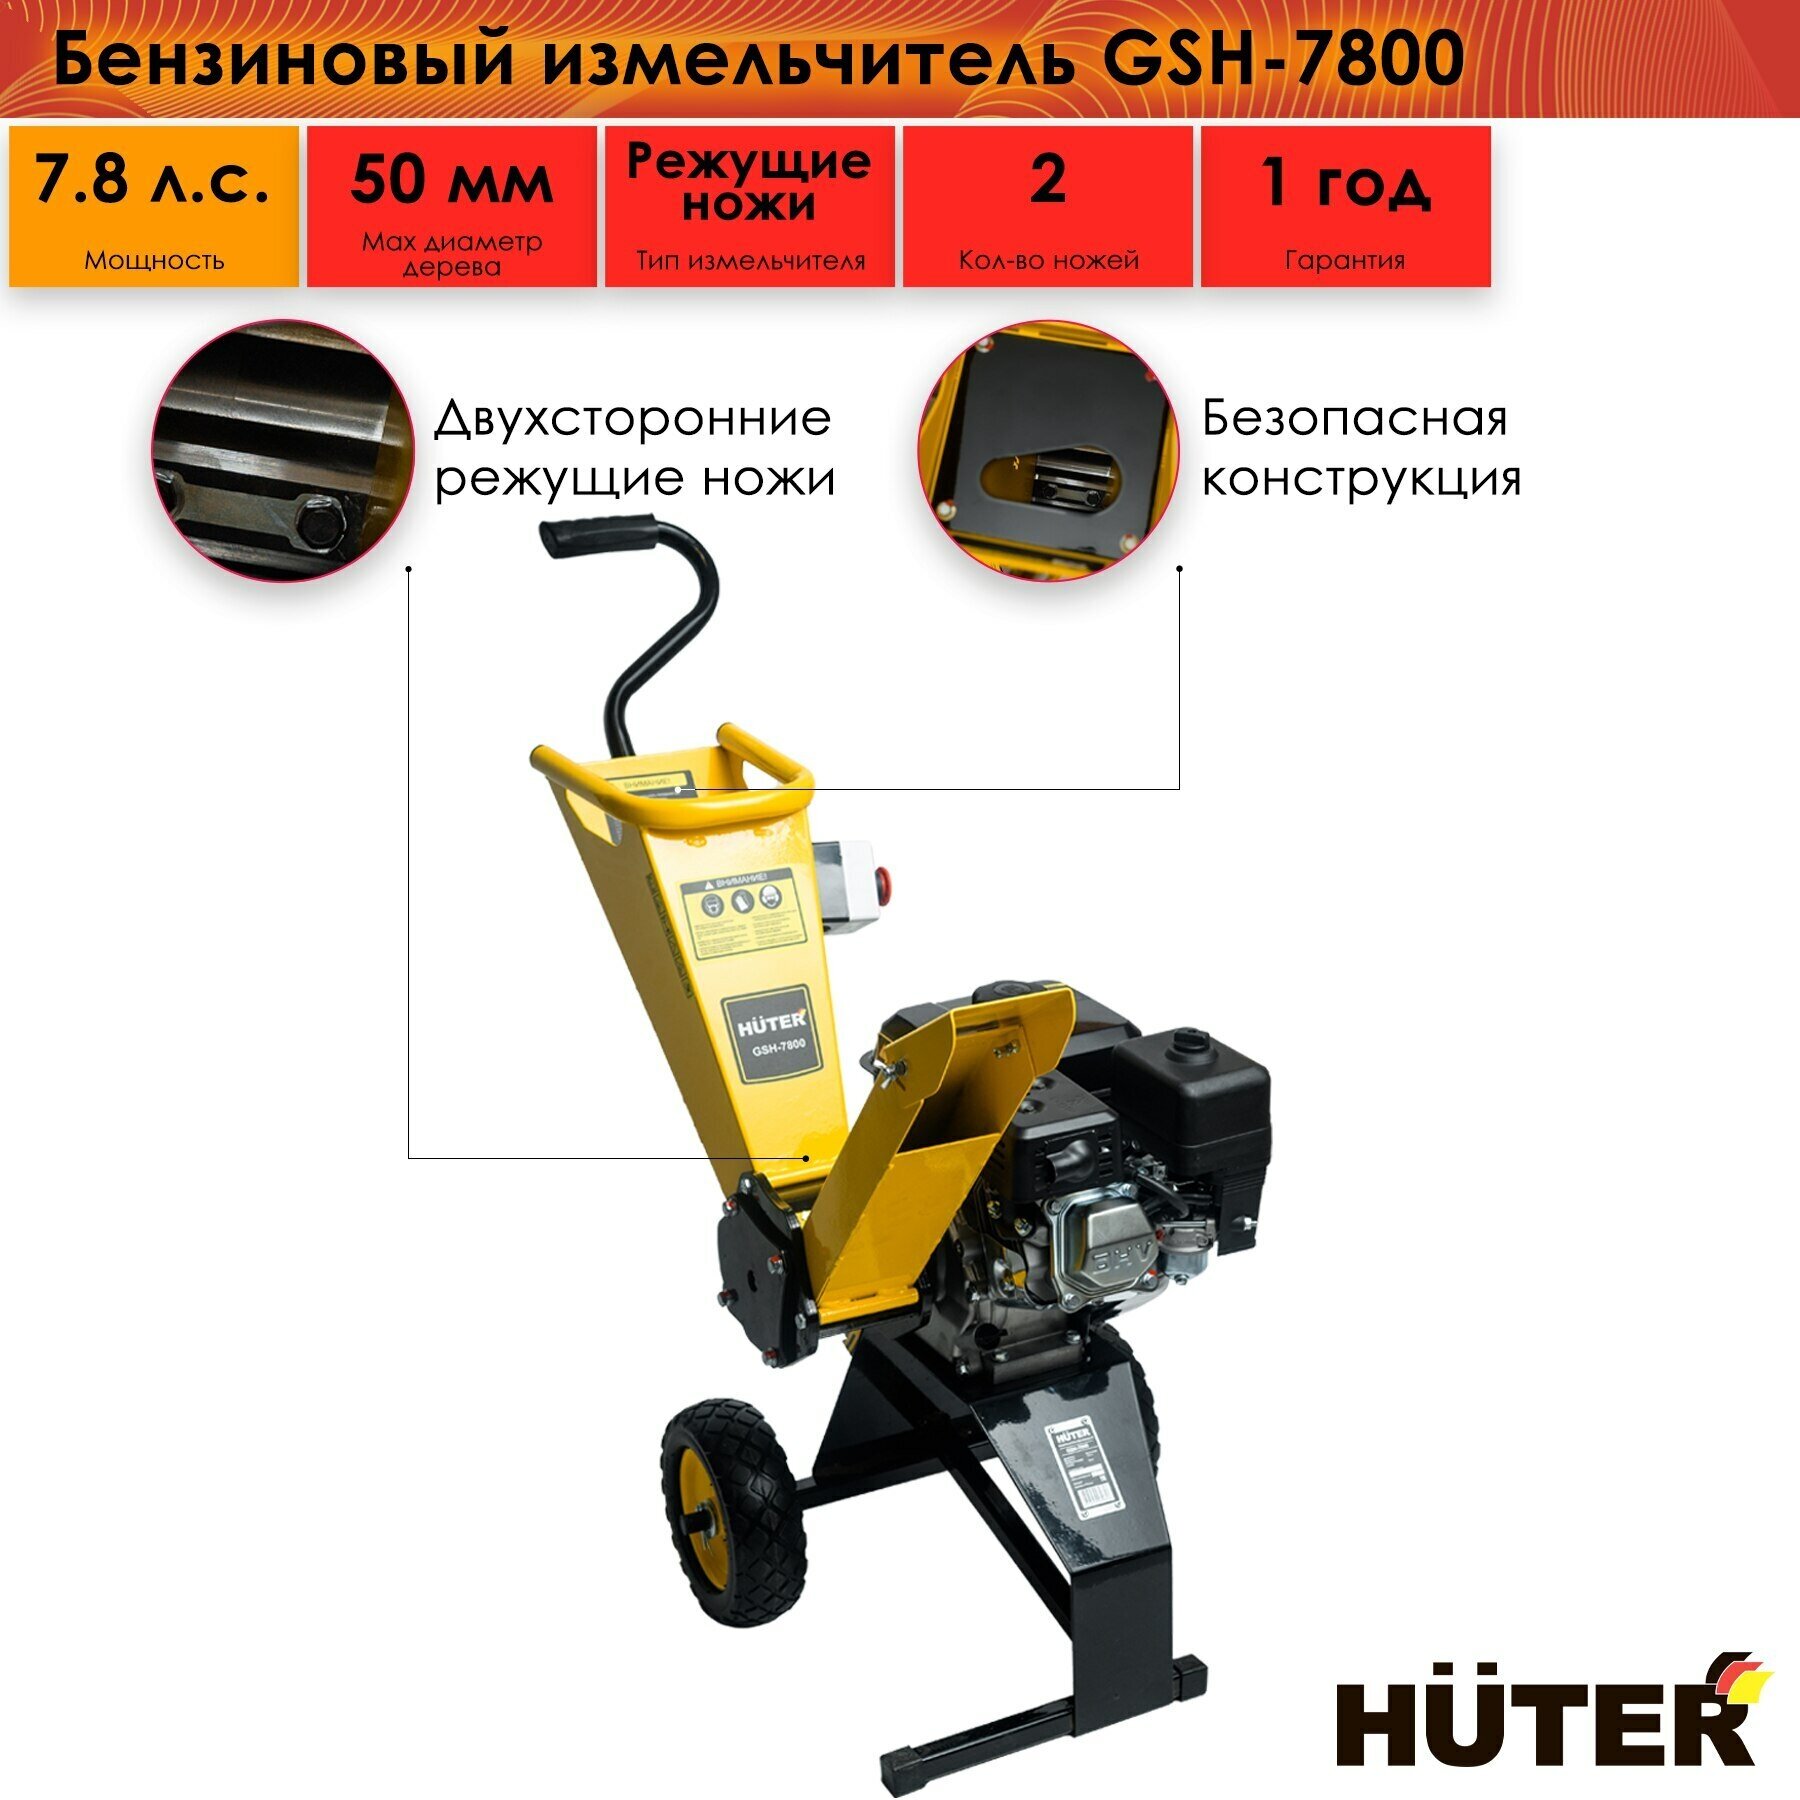 Бензиновый измельчитель GSH-7800 Huter